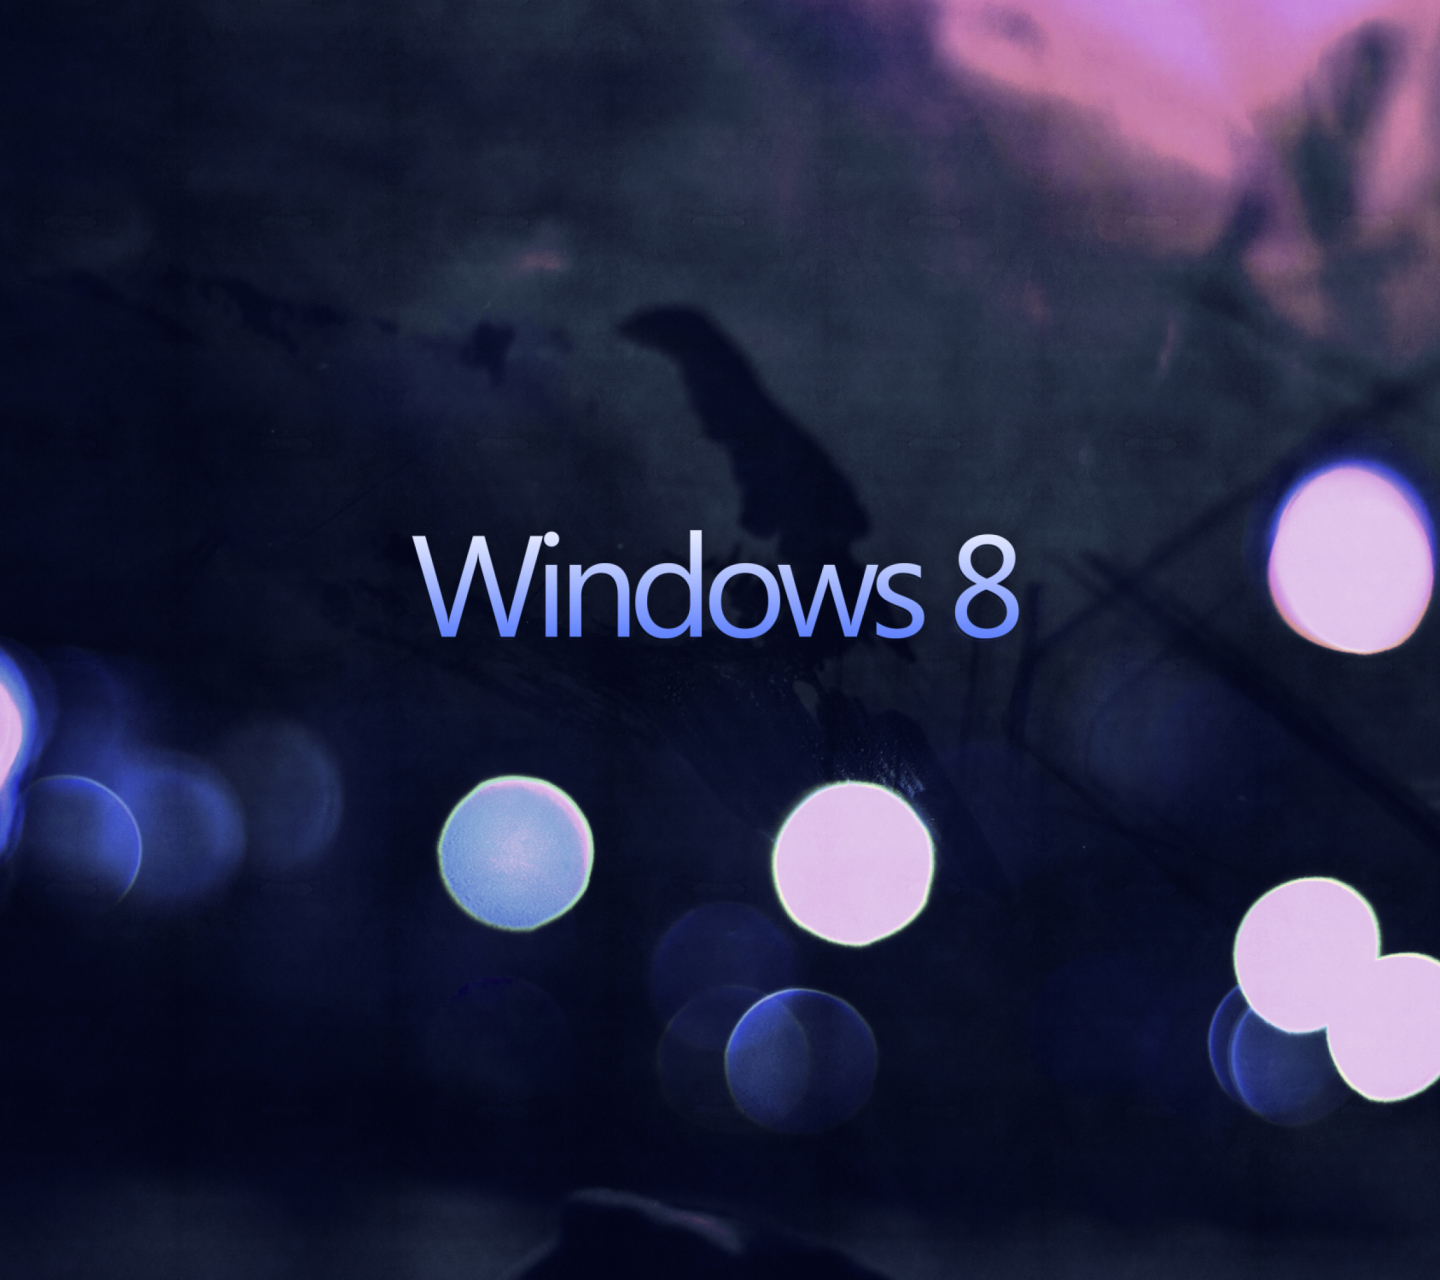 Windows 8 - Hi-Tech screenshot #1 1440x1280